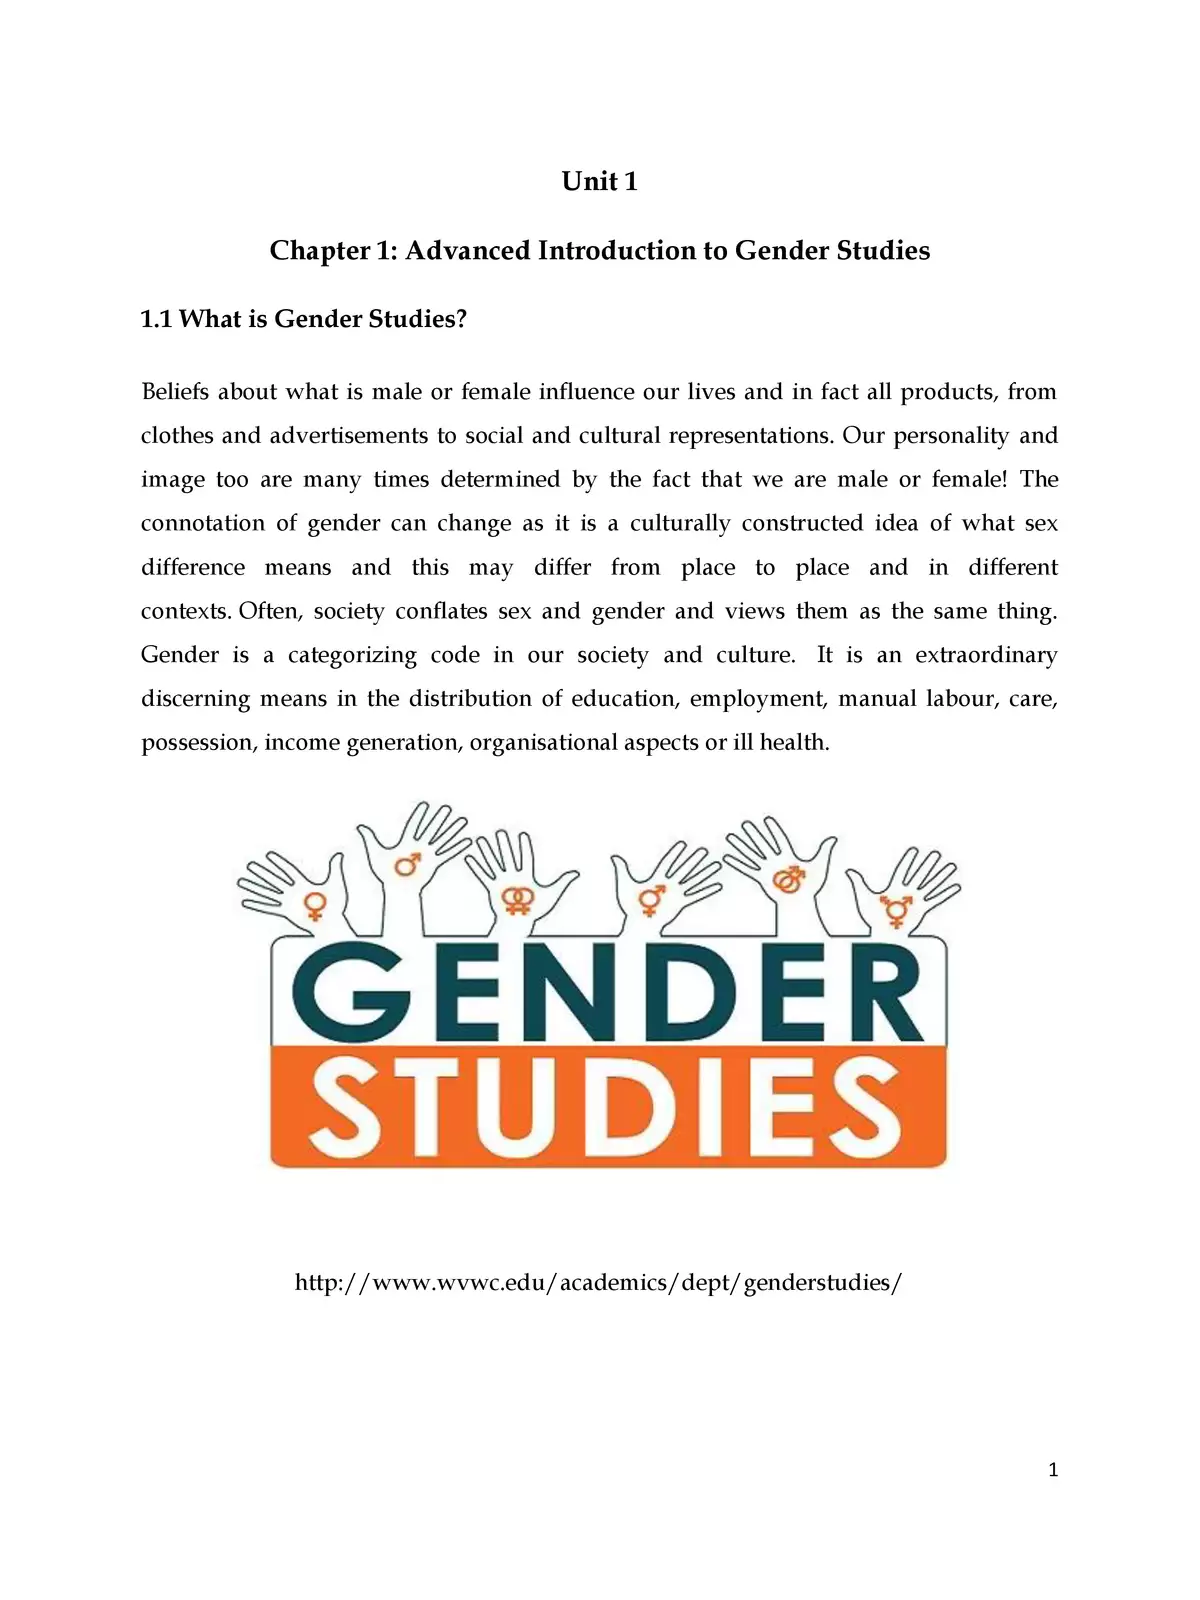 Gender Studies